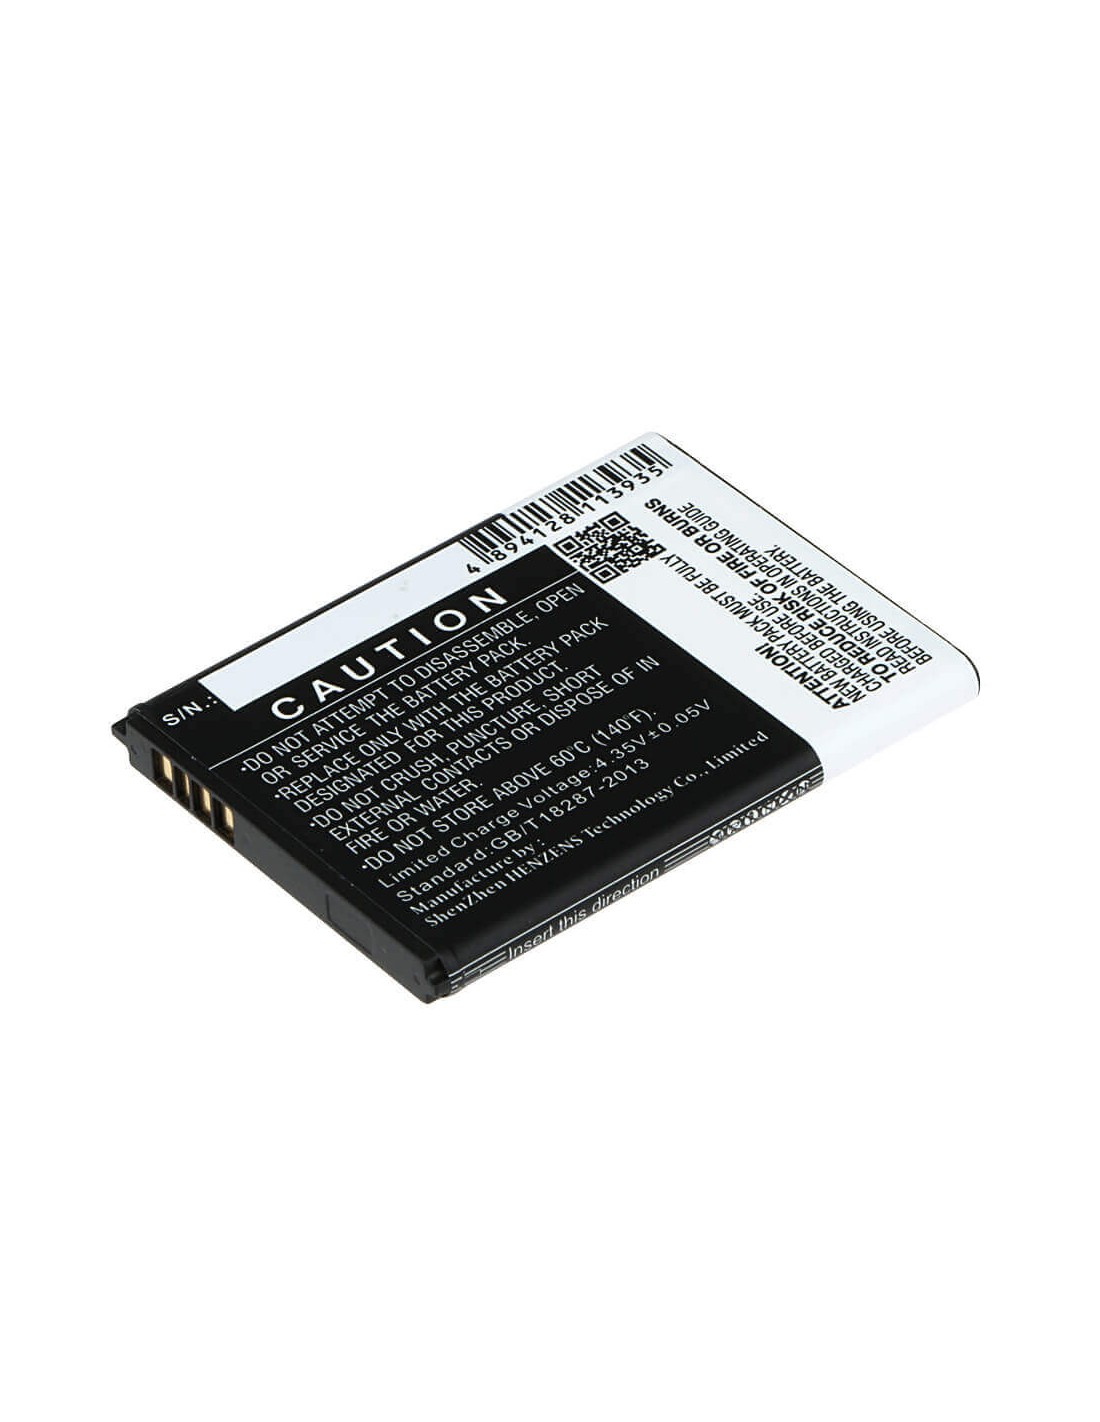 Battery for Vodafone Smart Speed 6, VF-795 3.8V, 1800mAh - 6.84Wh